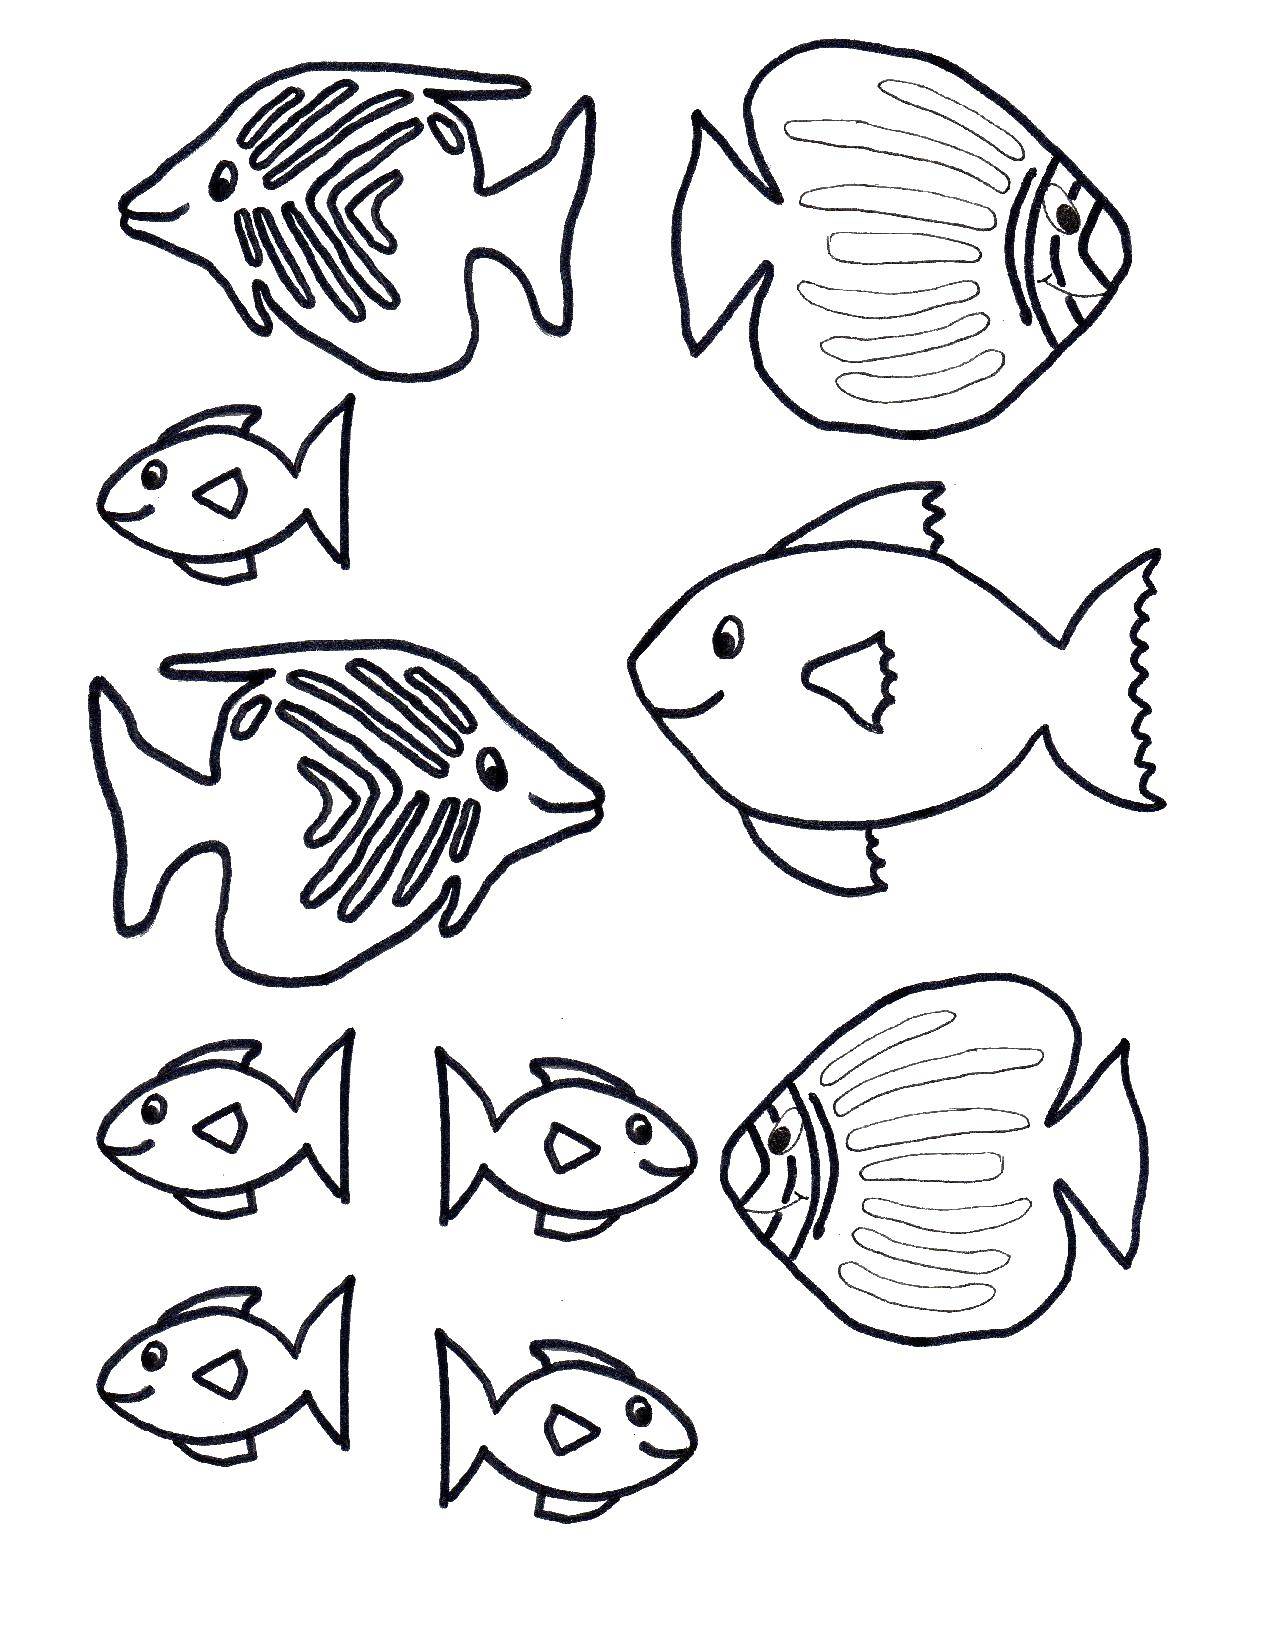 Раскраска рыбы и рыбки (рыбы, рыбки, море, задания, познавательные, развлекательные)